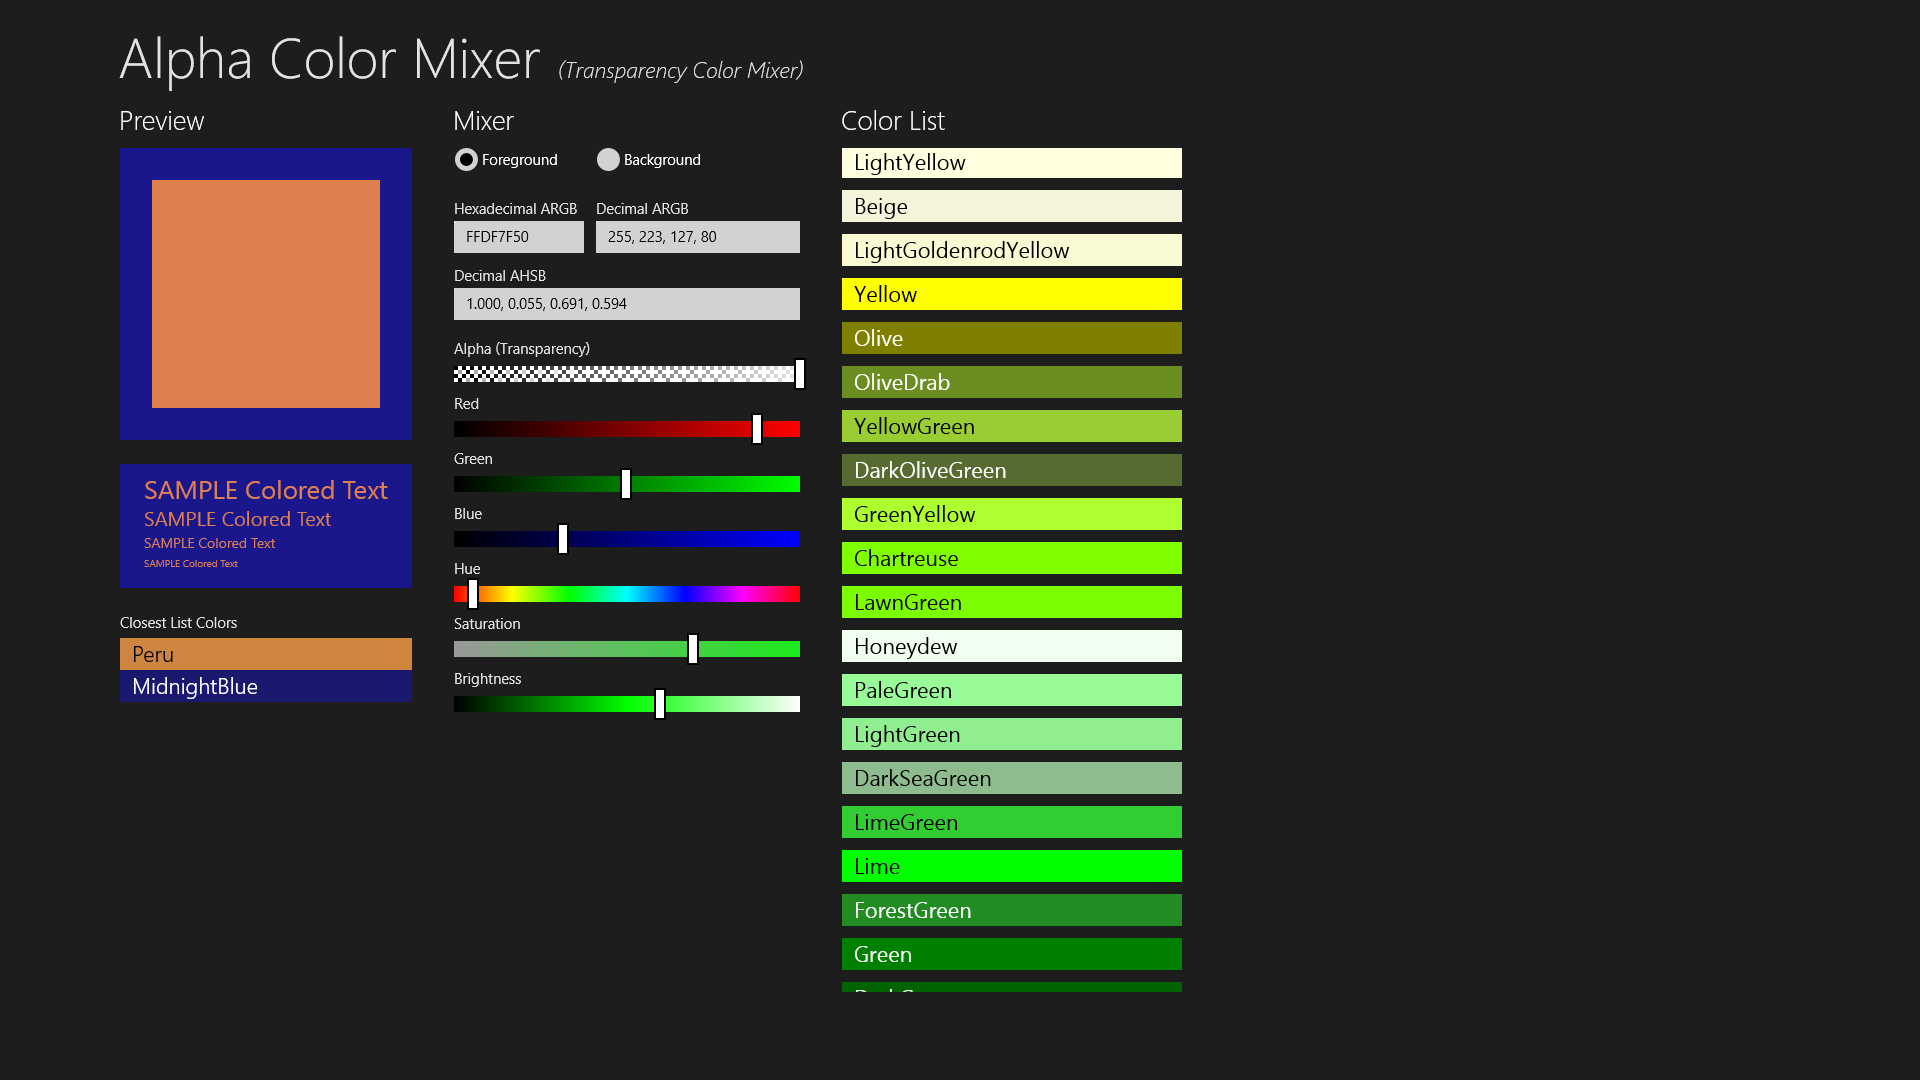 Alpha Color Mixer showing colors that are quite heinous.